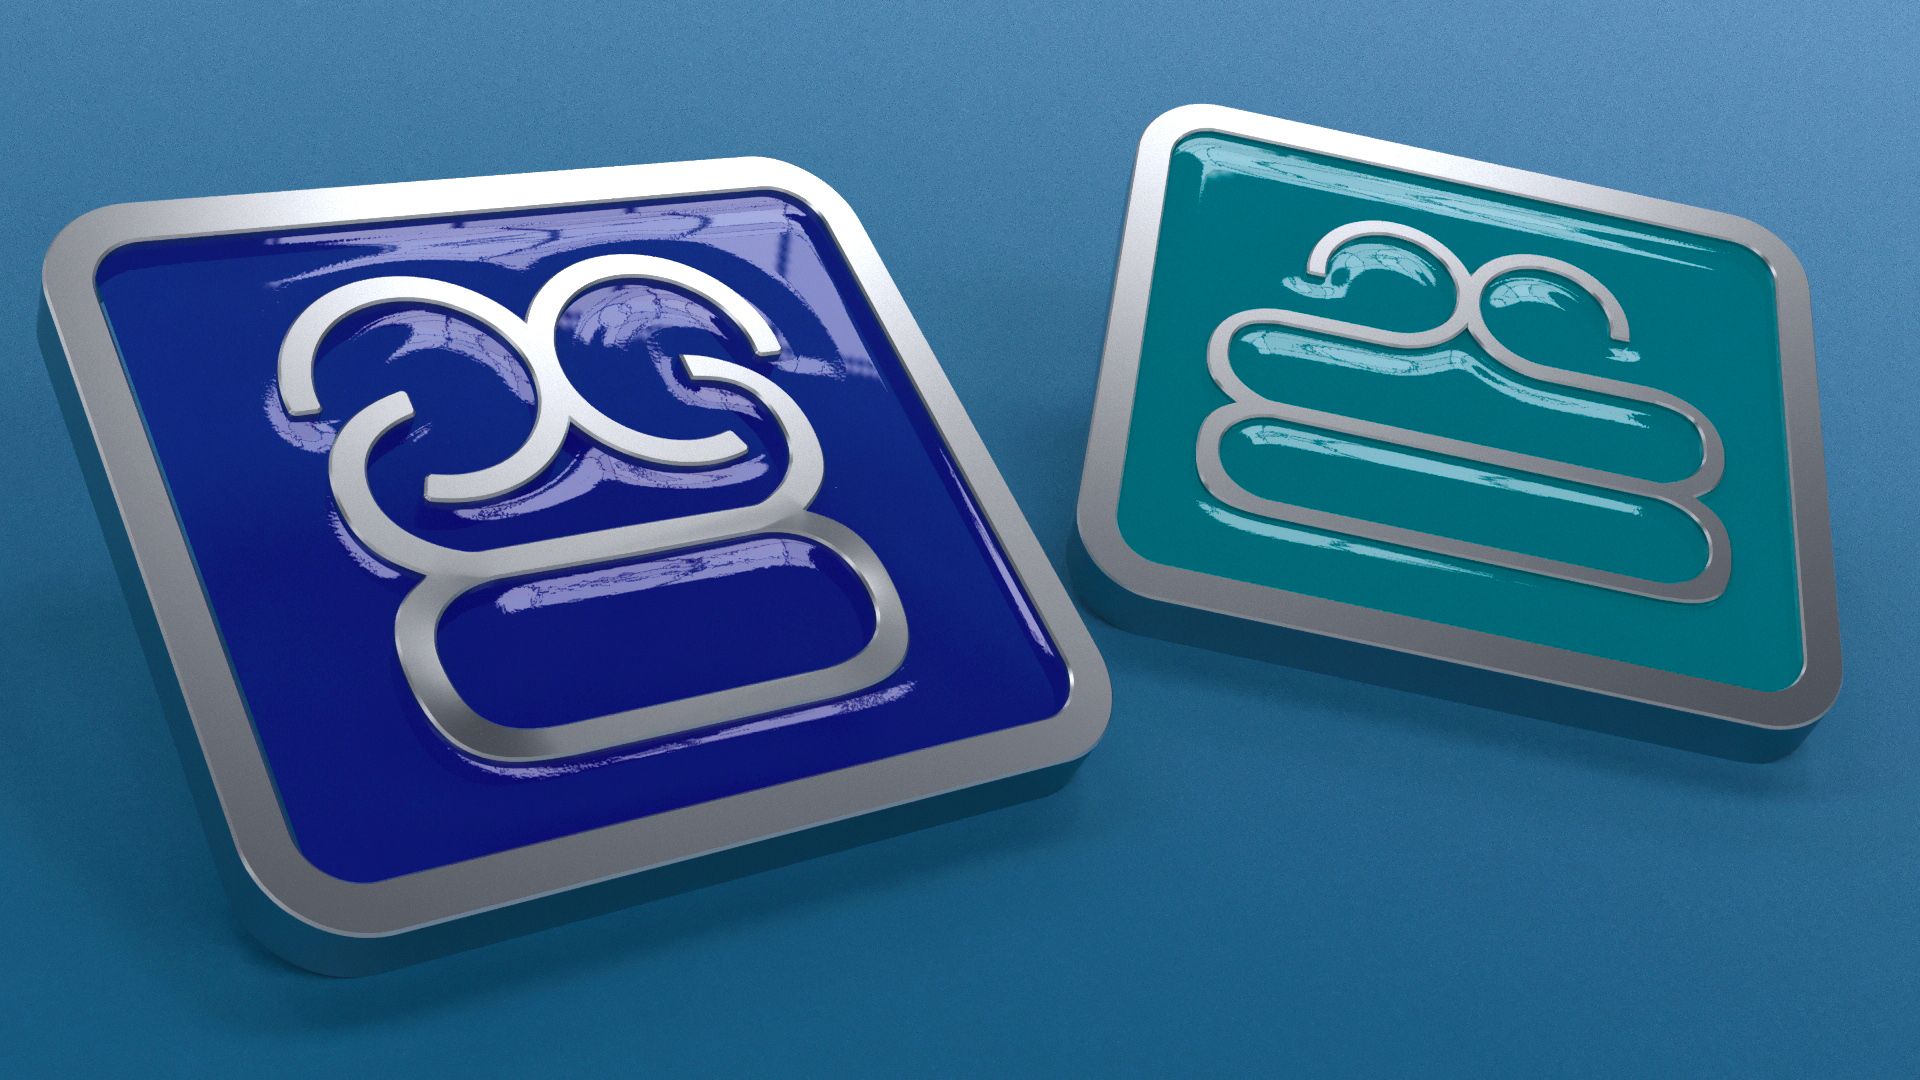 Иллюстрация для креативного значка (с лого компании) - дизайнер borabon